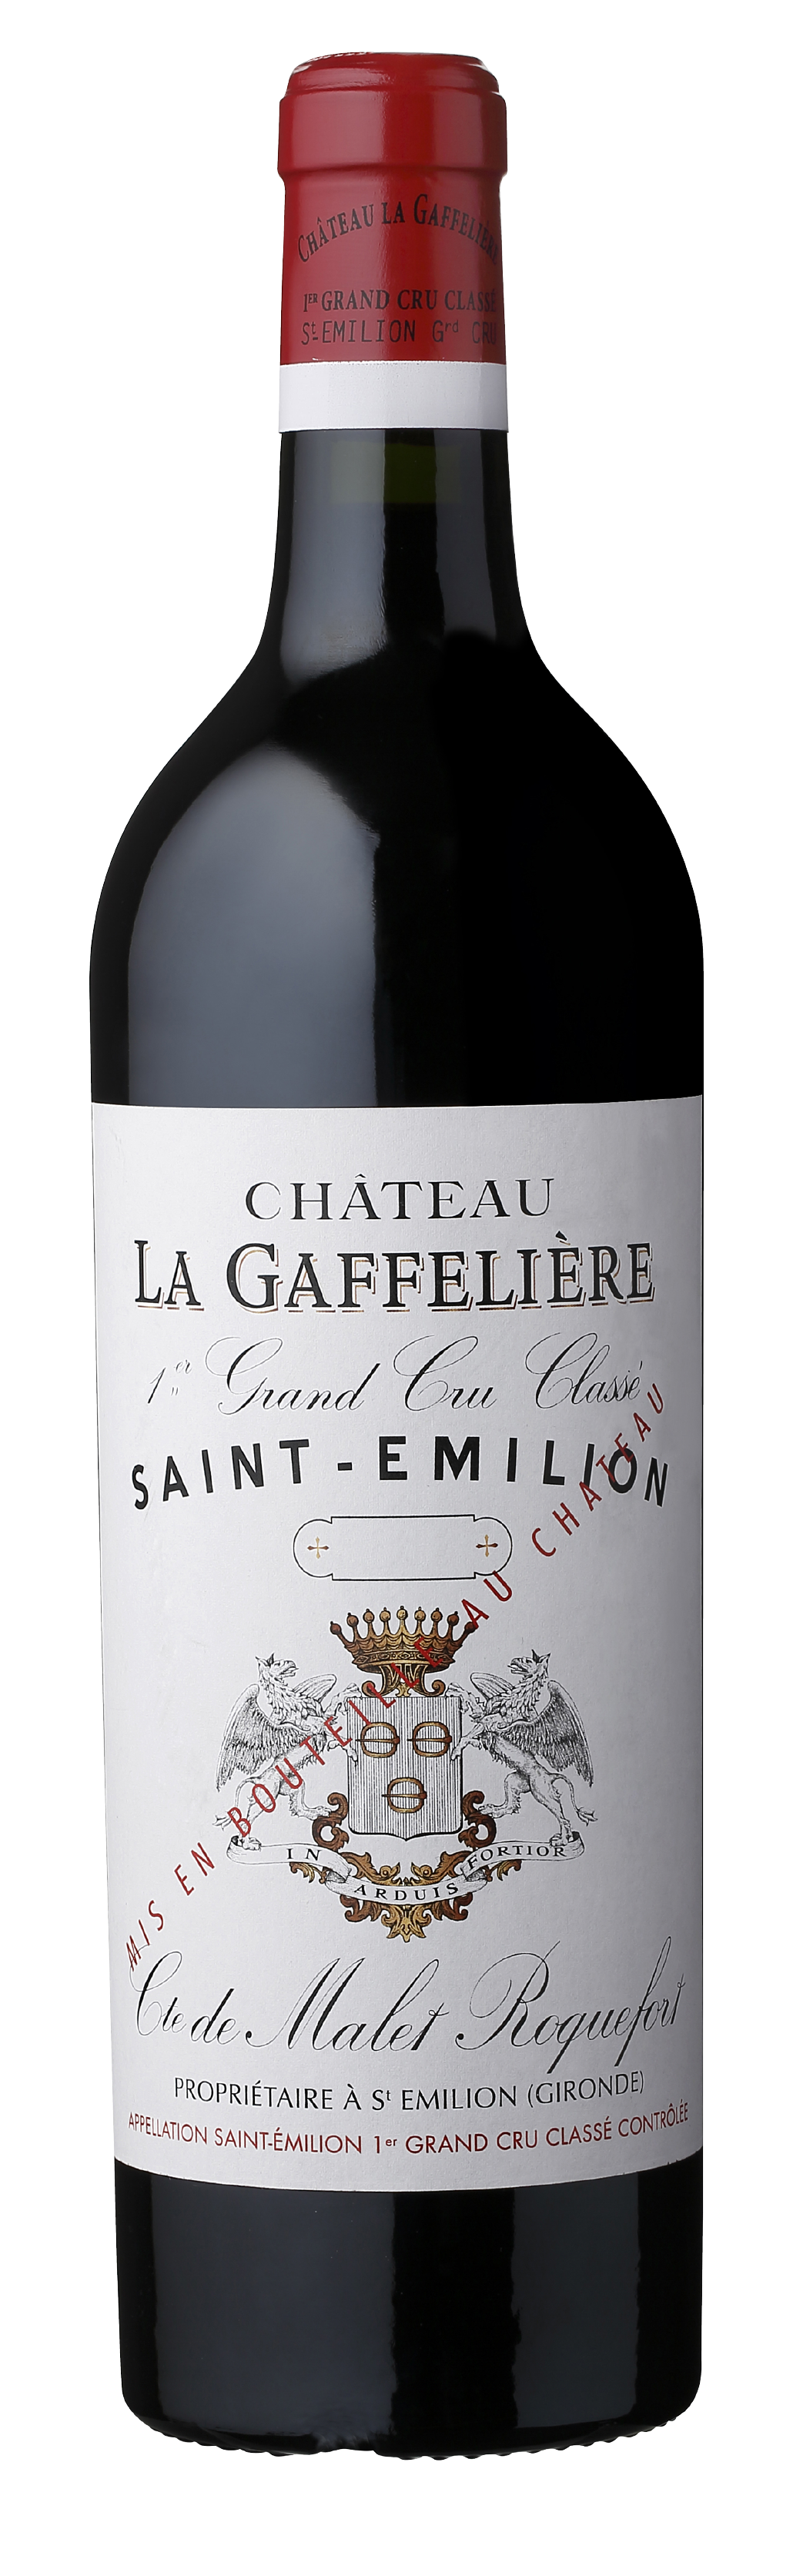 Château La Gaffelière, St Emilion 1er Grand Cru Classé, Mixed Case (2 Each 2010, 2015, 2016), 750ml, 6 Bottles